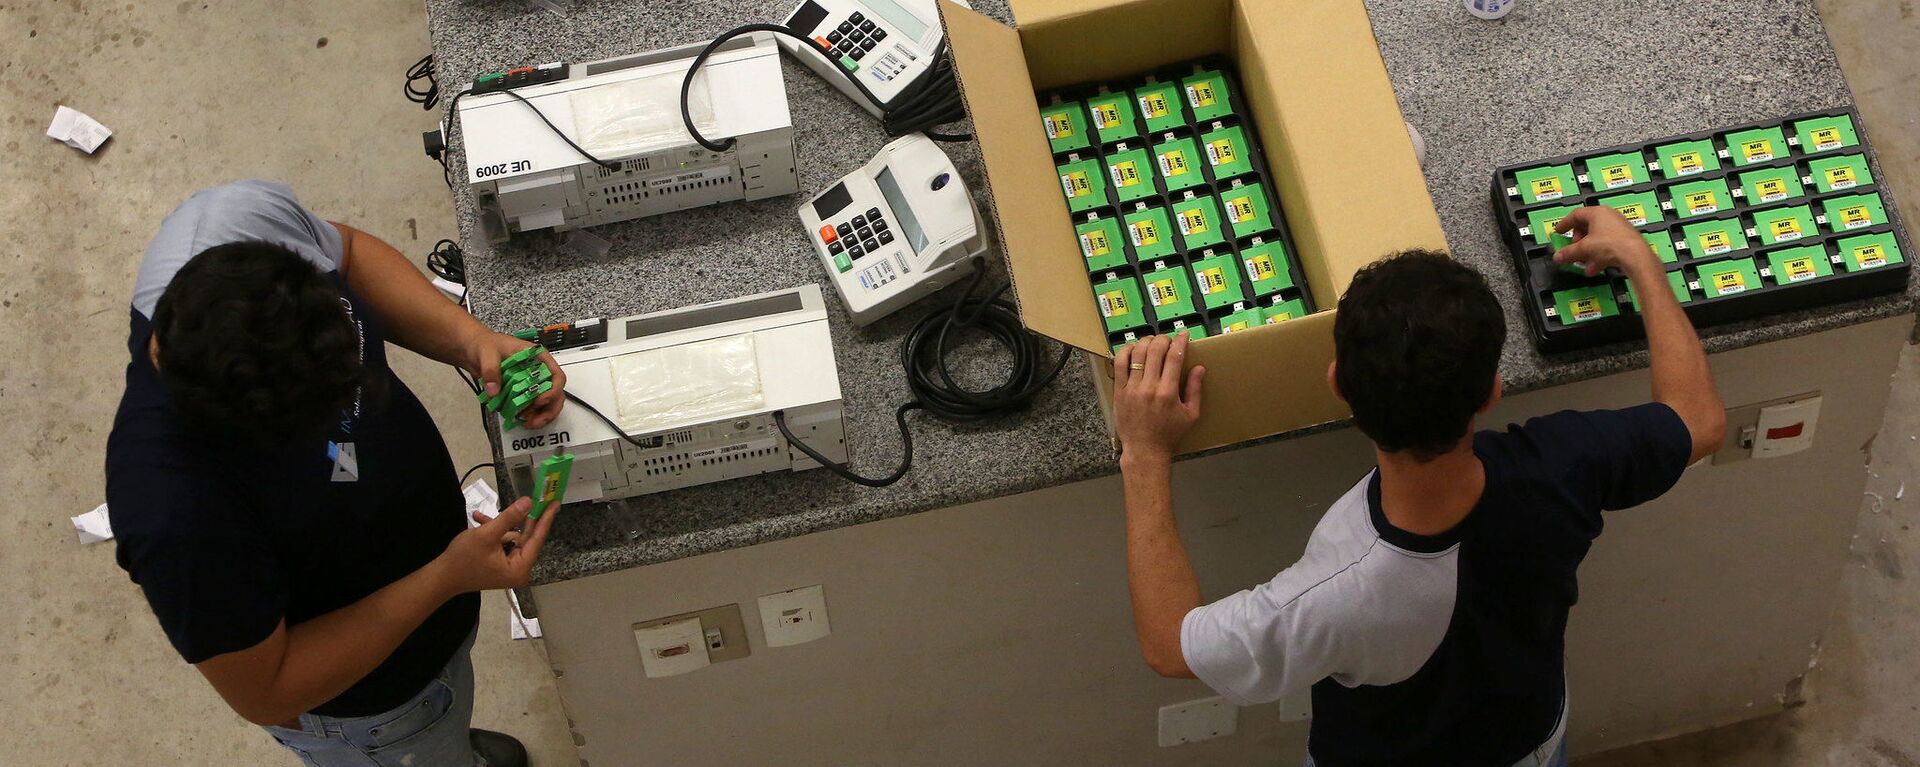 Trabajadores electorales preparan las urnas electrónicas en Brasil para las elecciones municipales del domingo - Sputnik Mundo, 1920, 12.08.2021